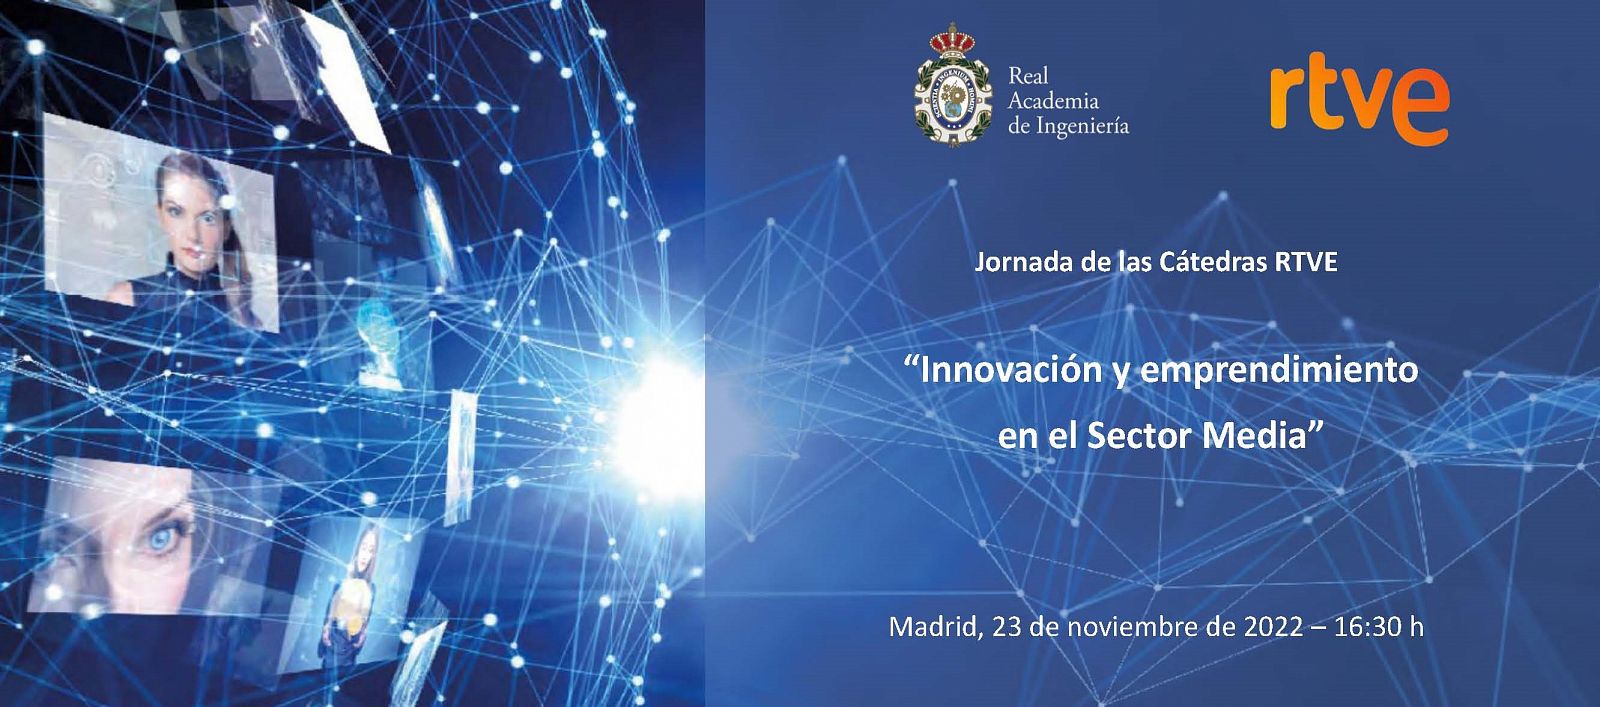 Jornada de las C�tedras de RTVE sobre innovaci�n y emprendimiento en el Sector Media